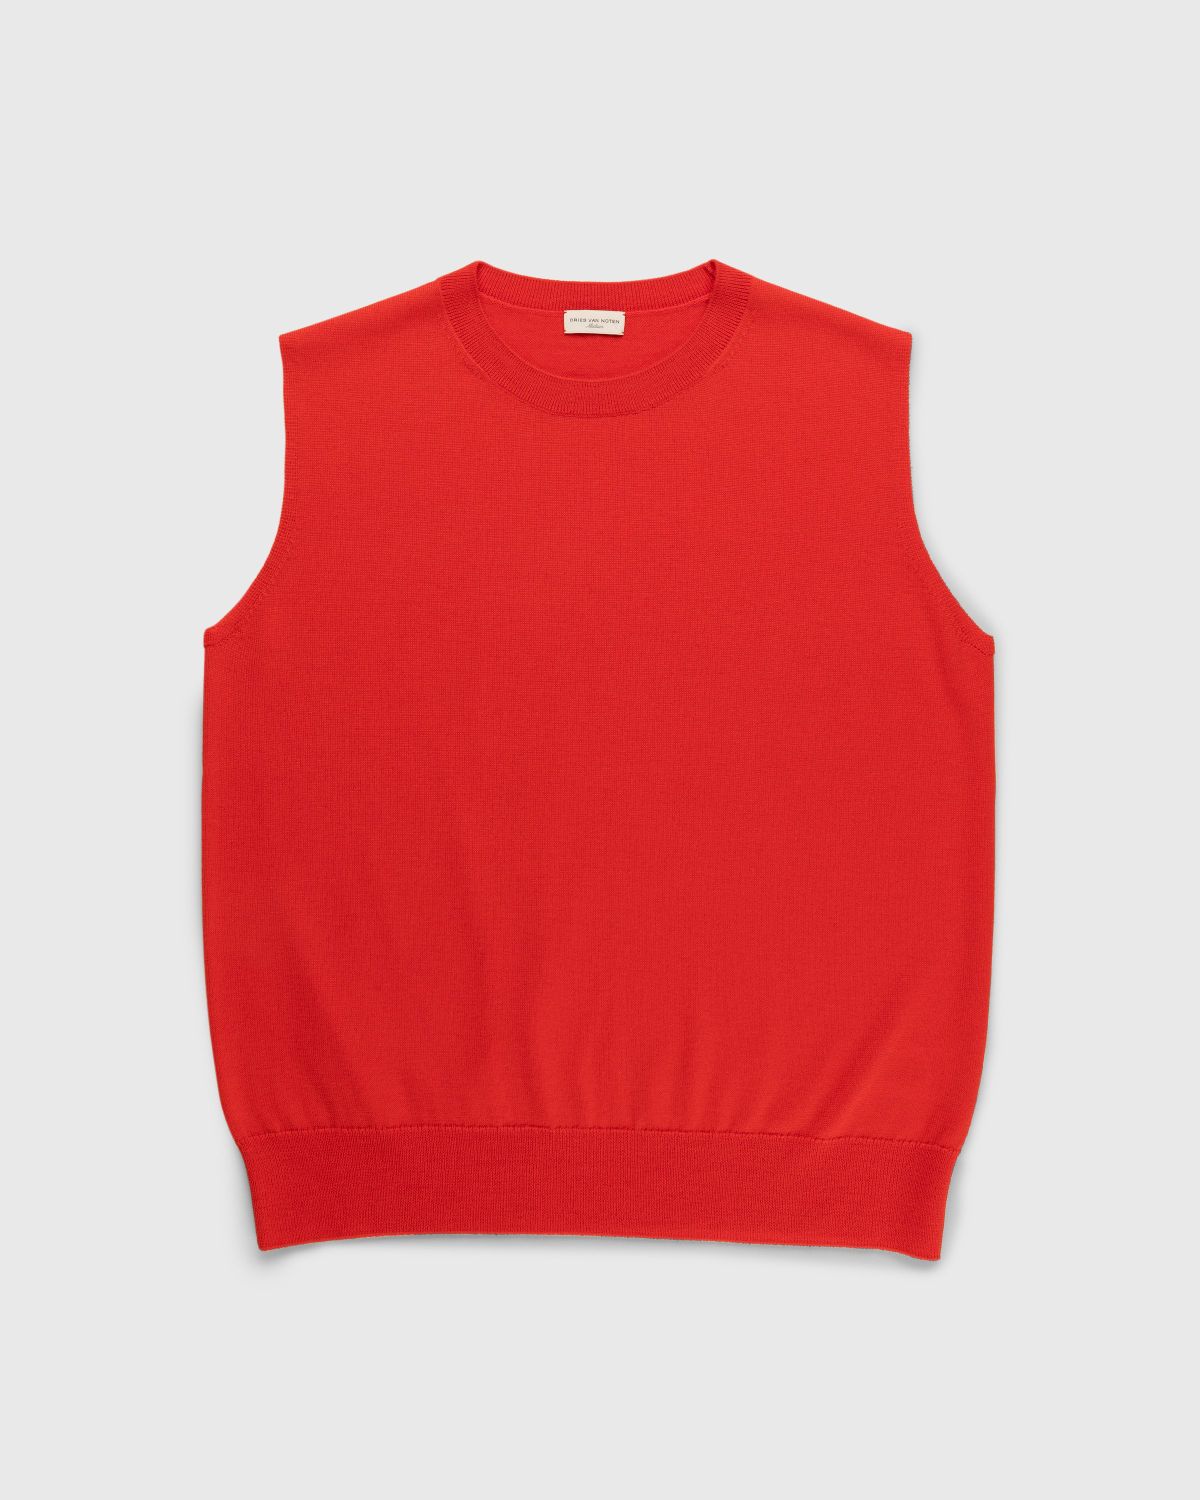 Dries van Noten – Neptune Sweater Vest Red - Gilets - Red - Image 1